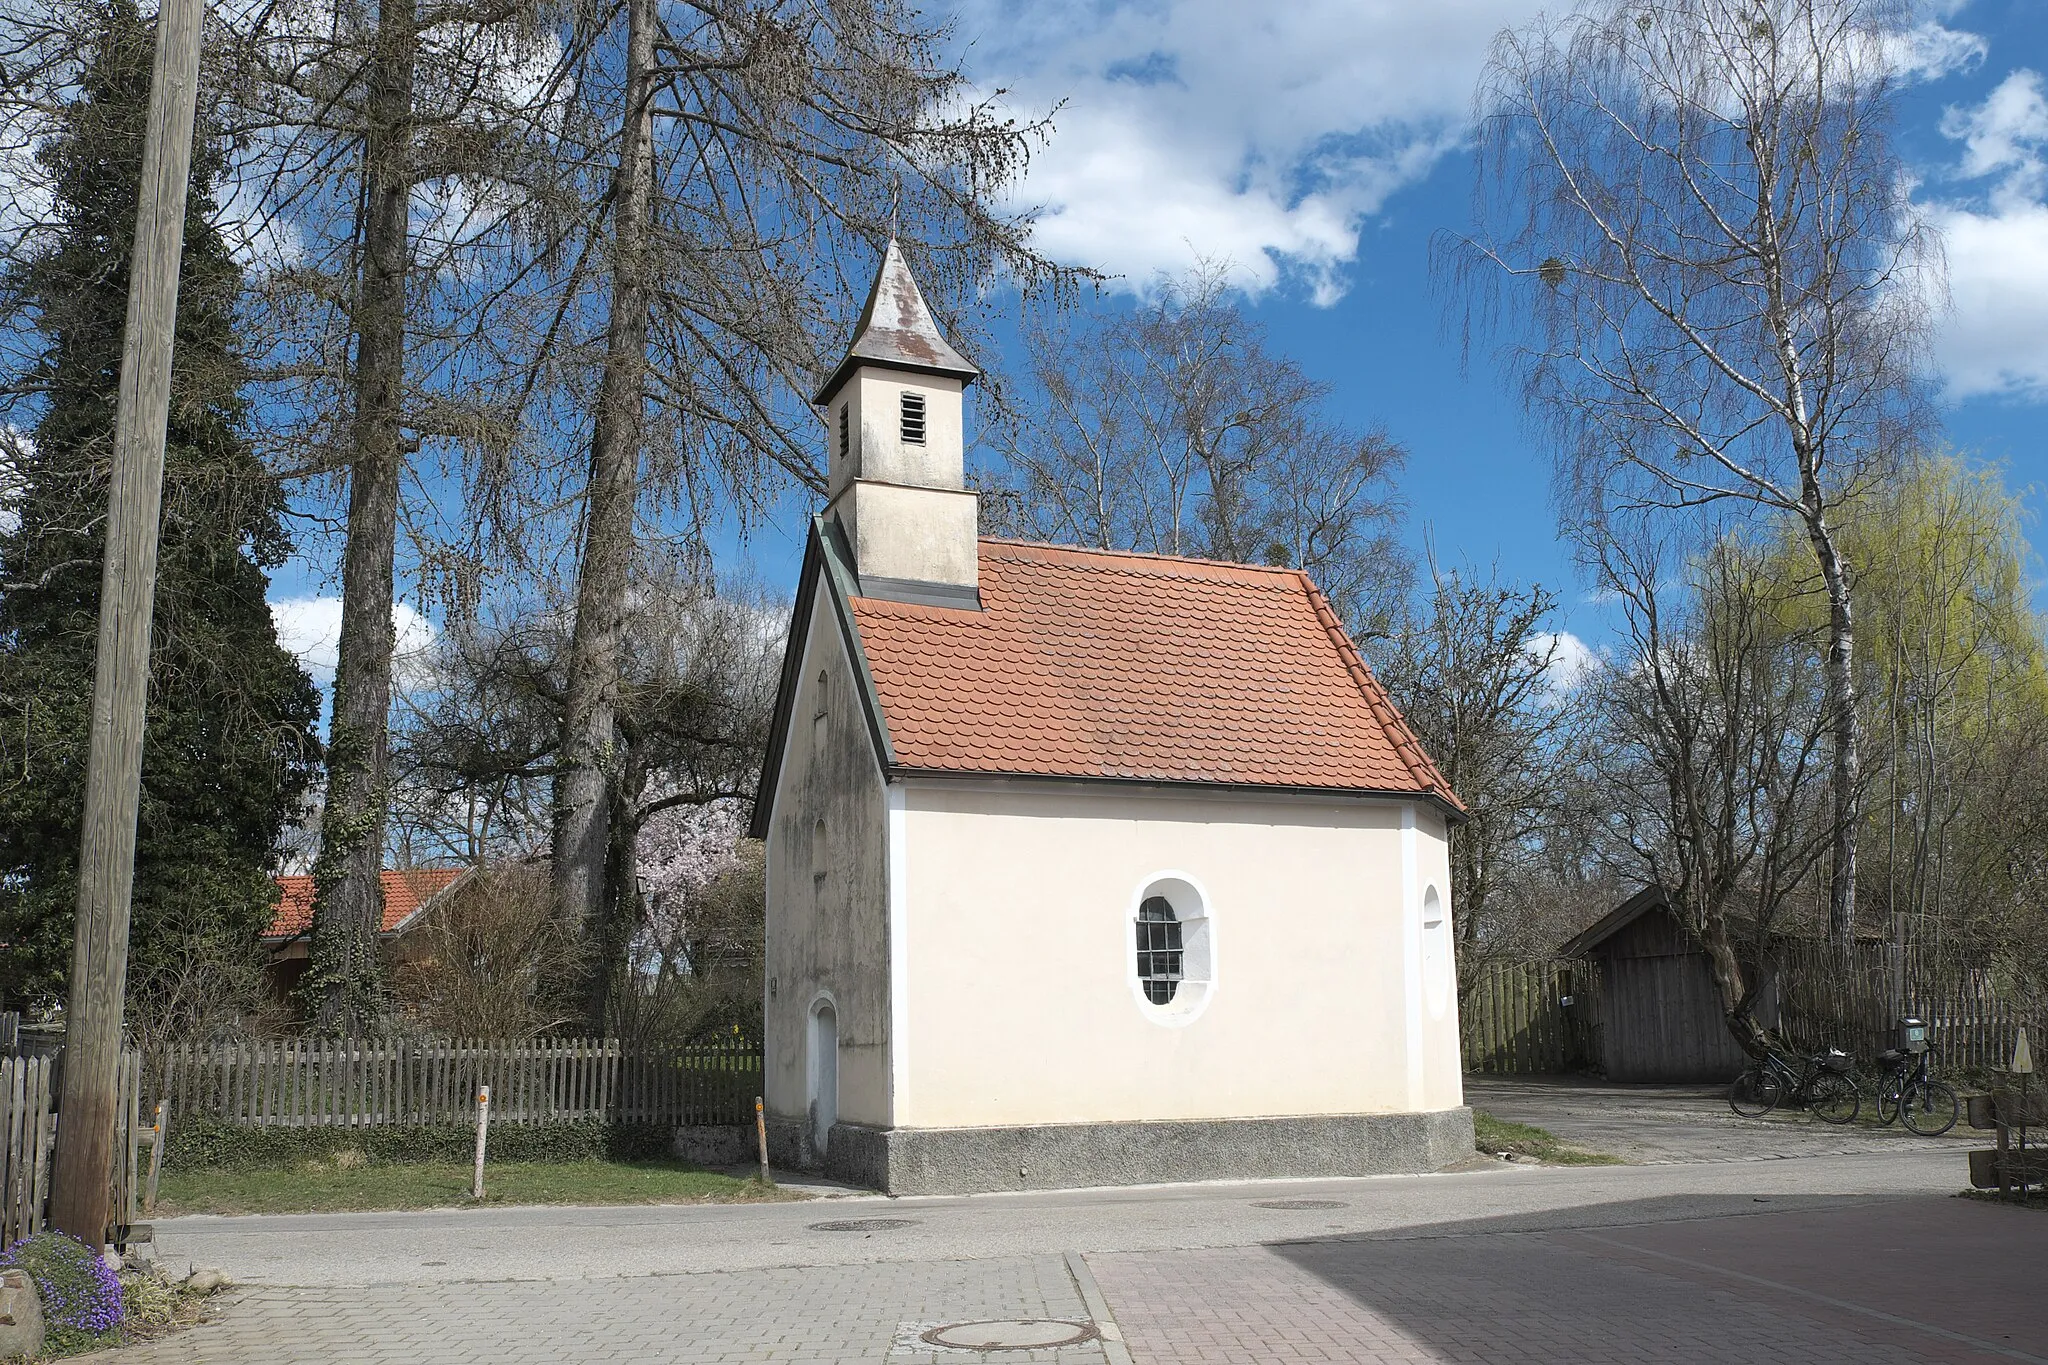 Photo showing: Katholische Kapelle St. Stephanus in Attenhausen (Icking) im Landkreis Bad Tölz-Wolfratshausen (Bayern/Deutschland), aus der zweiten Hälfte des 17. Jahrhunderts